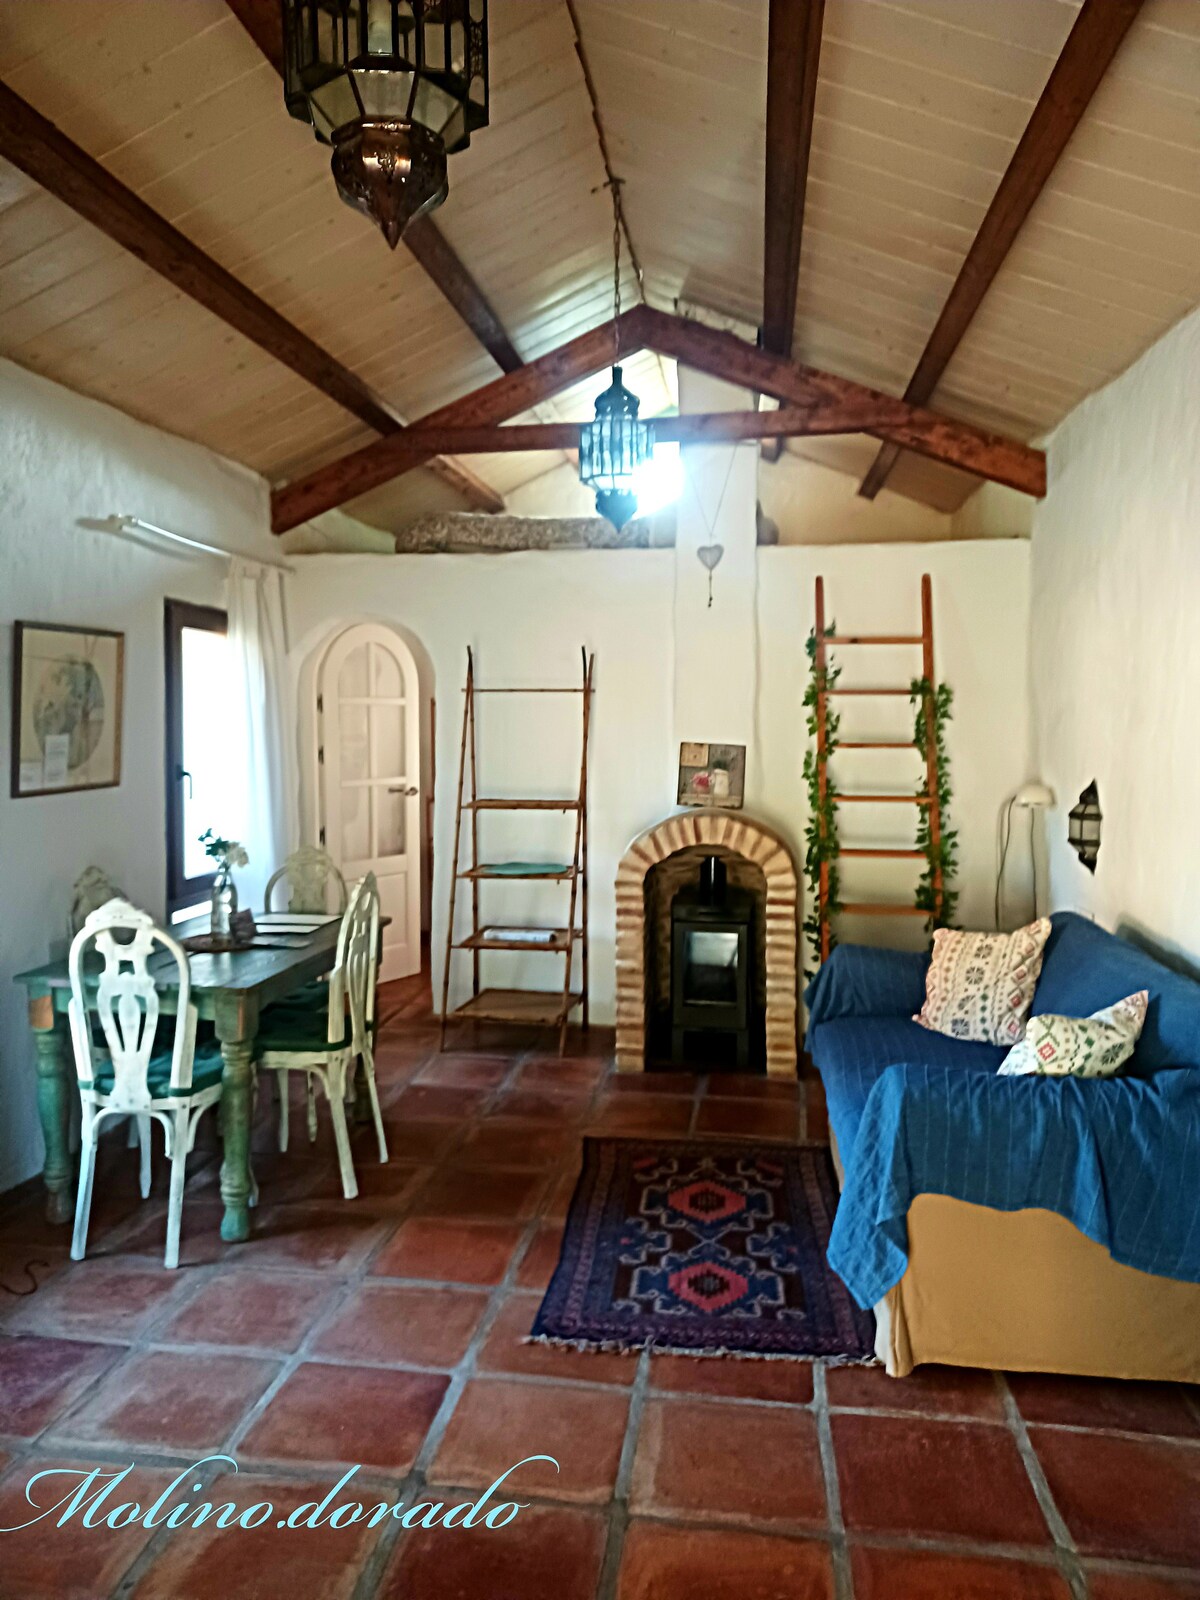 Casa Rural del Molino Dorado, Casa Higuera